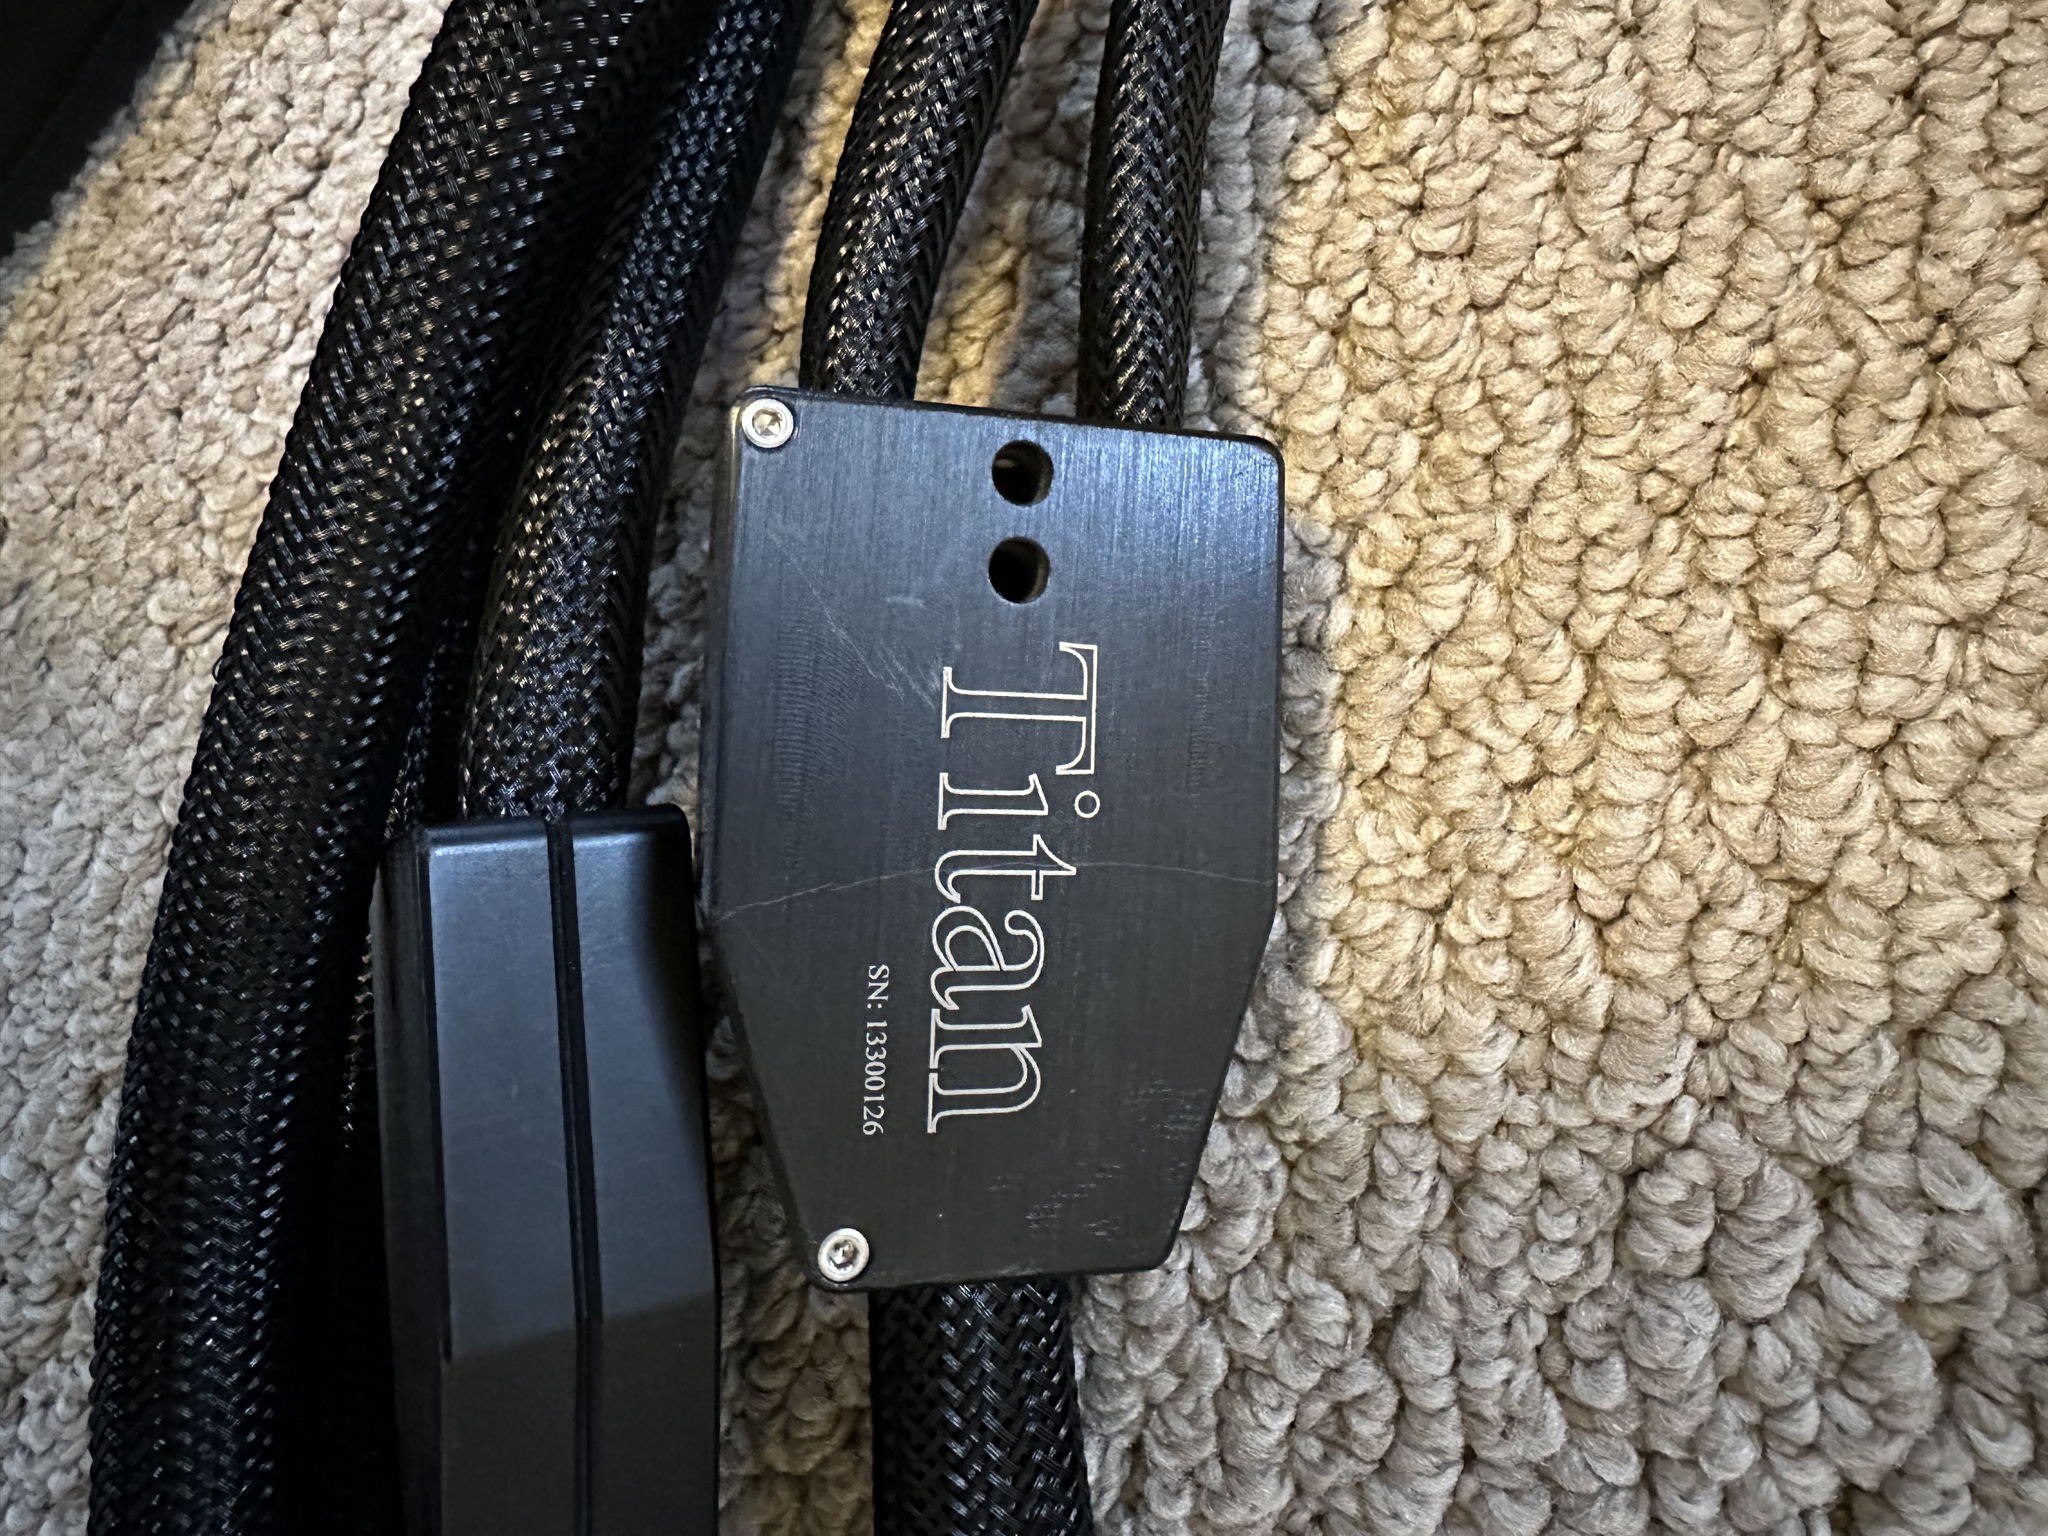 EnKlein Titan 8 foot speaker cables 2